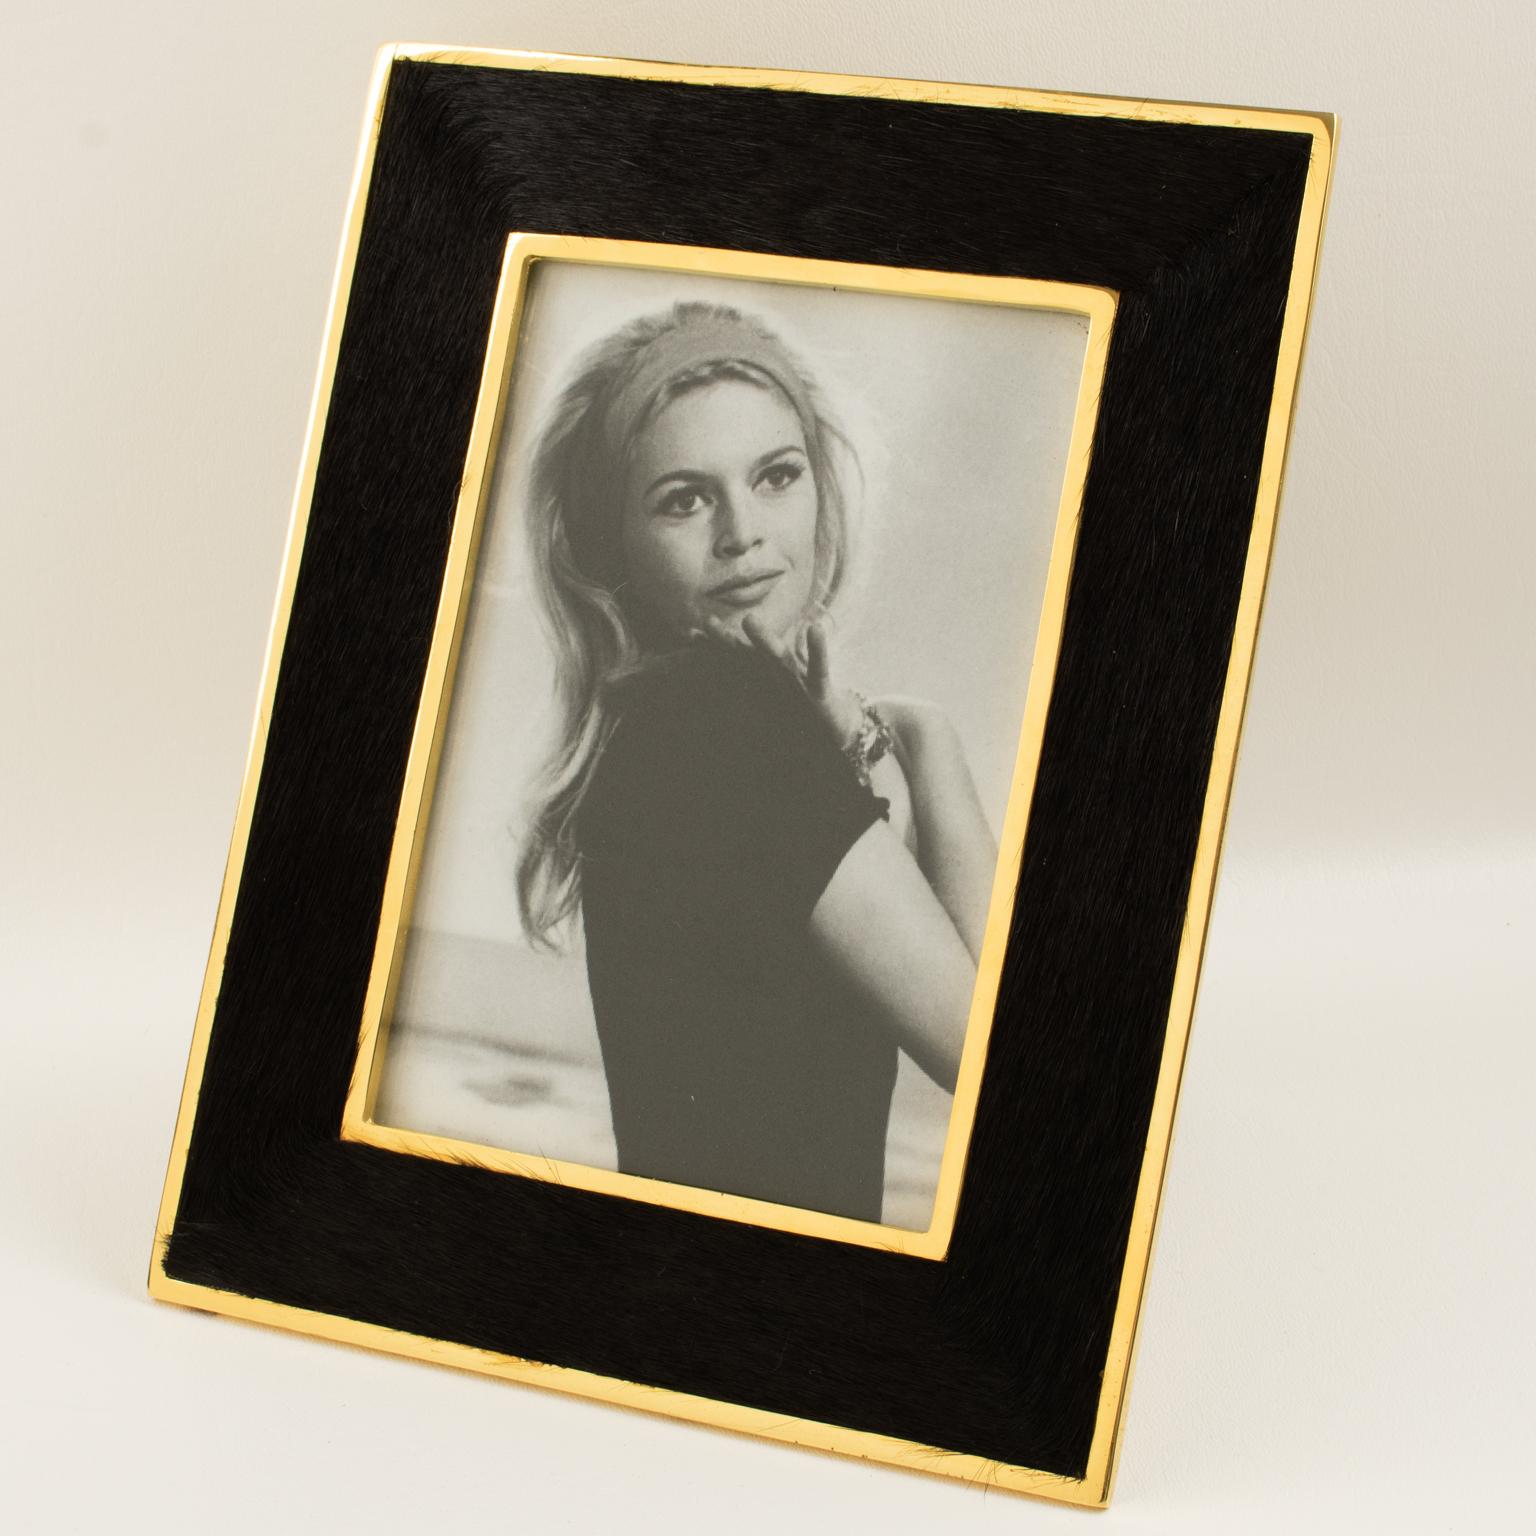 Le designer français Edouard Rambaud a conçu ce magnifique cadre photo en métal doré et fourrure dans les années 1980. La forme géométrique est encadrée de métal doré brossé et ornée de fourrure de poney. La fourrure du poney est d'une belle couleur